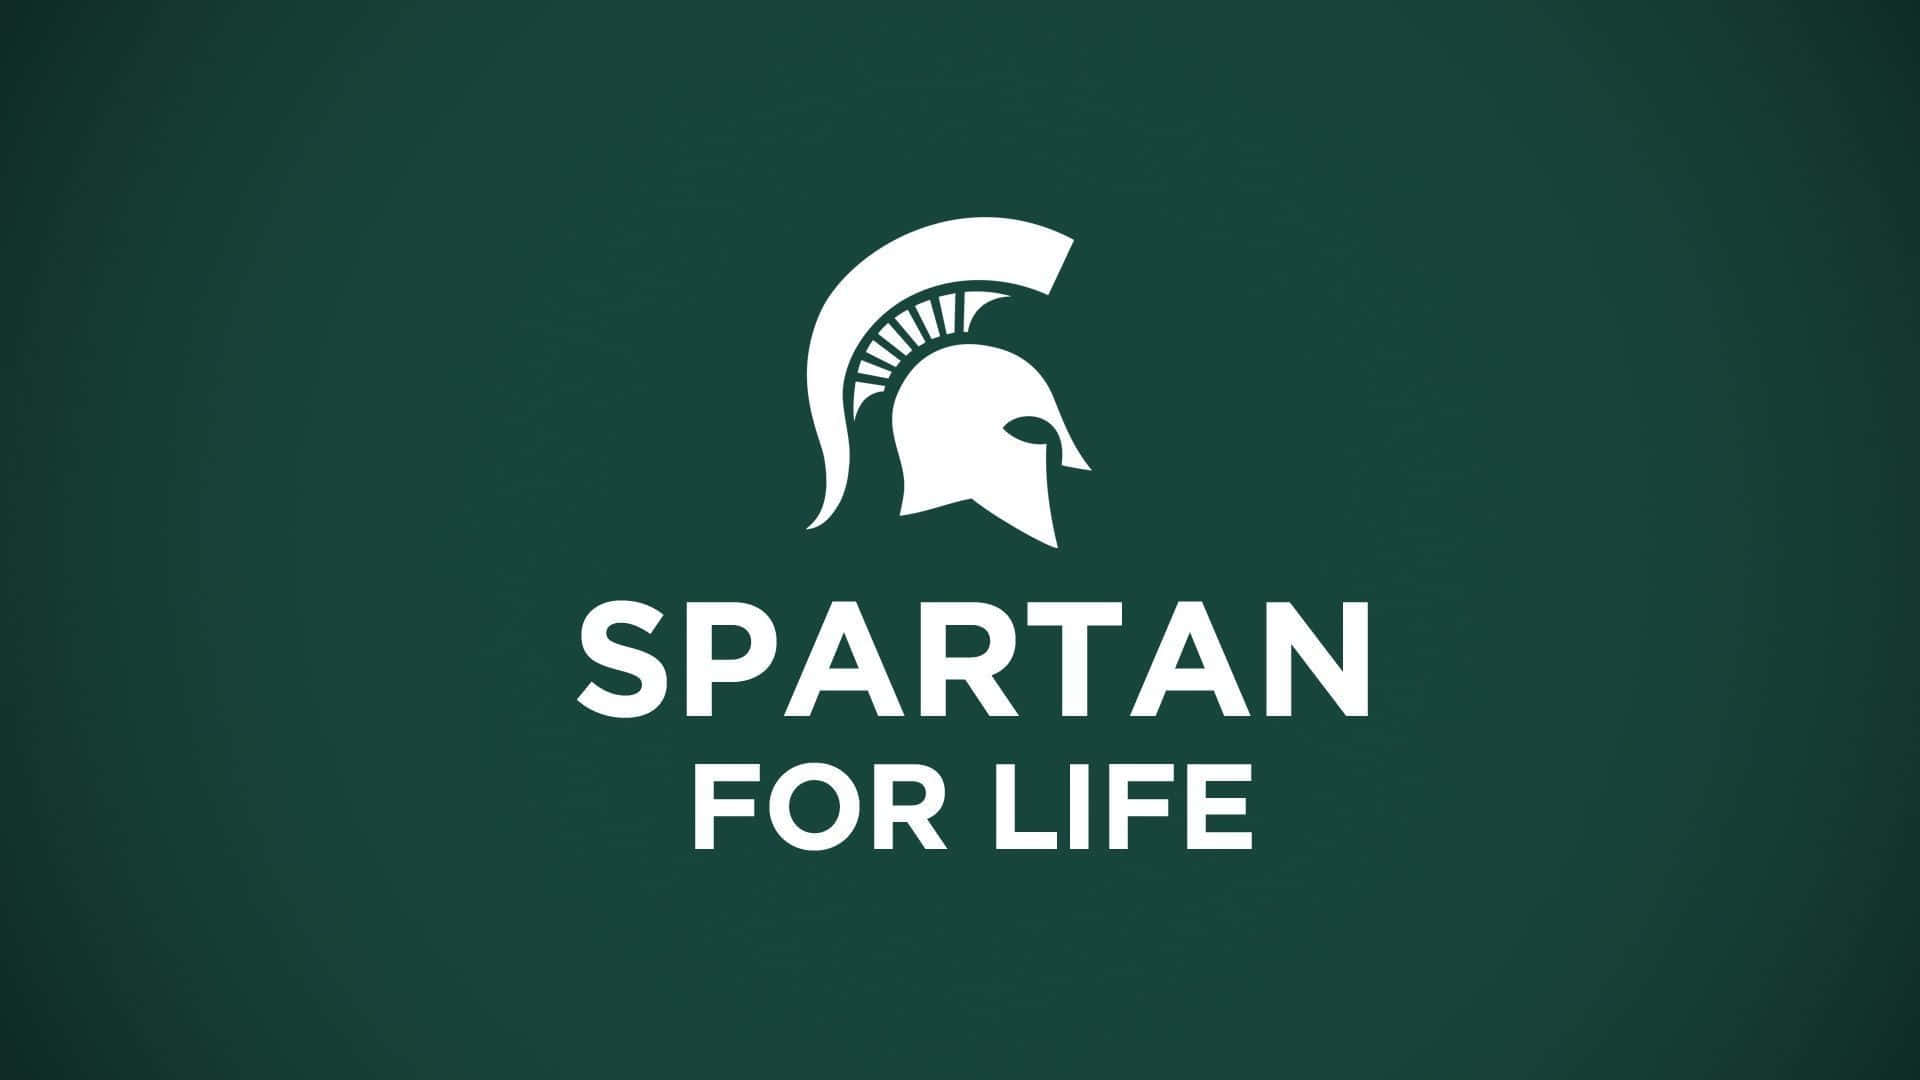 Michiganstate Spartans För Livet. Wallpaper